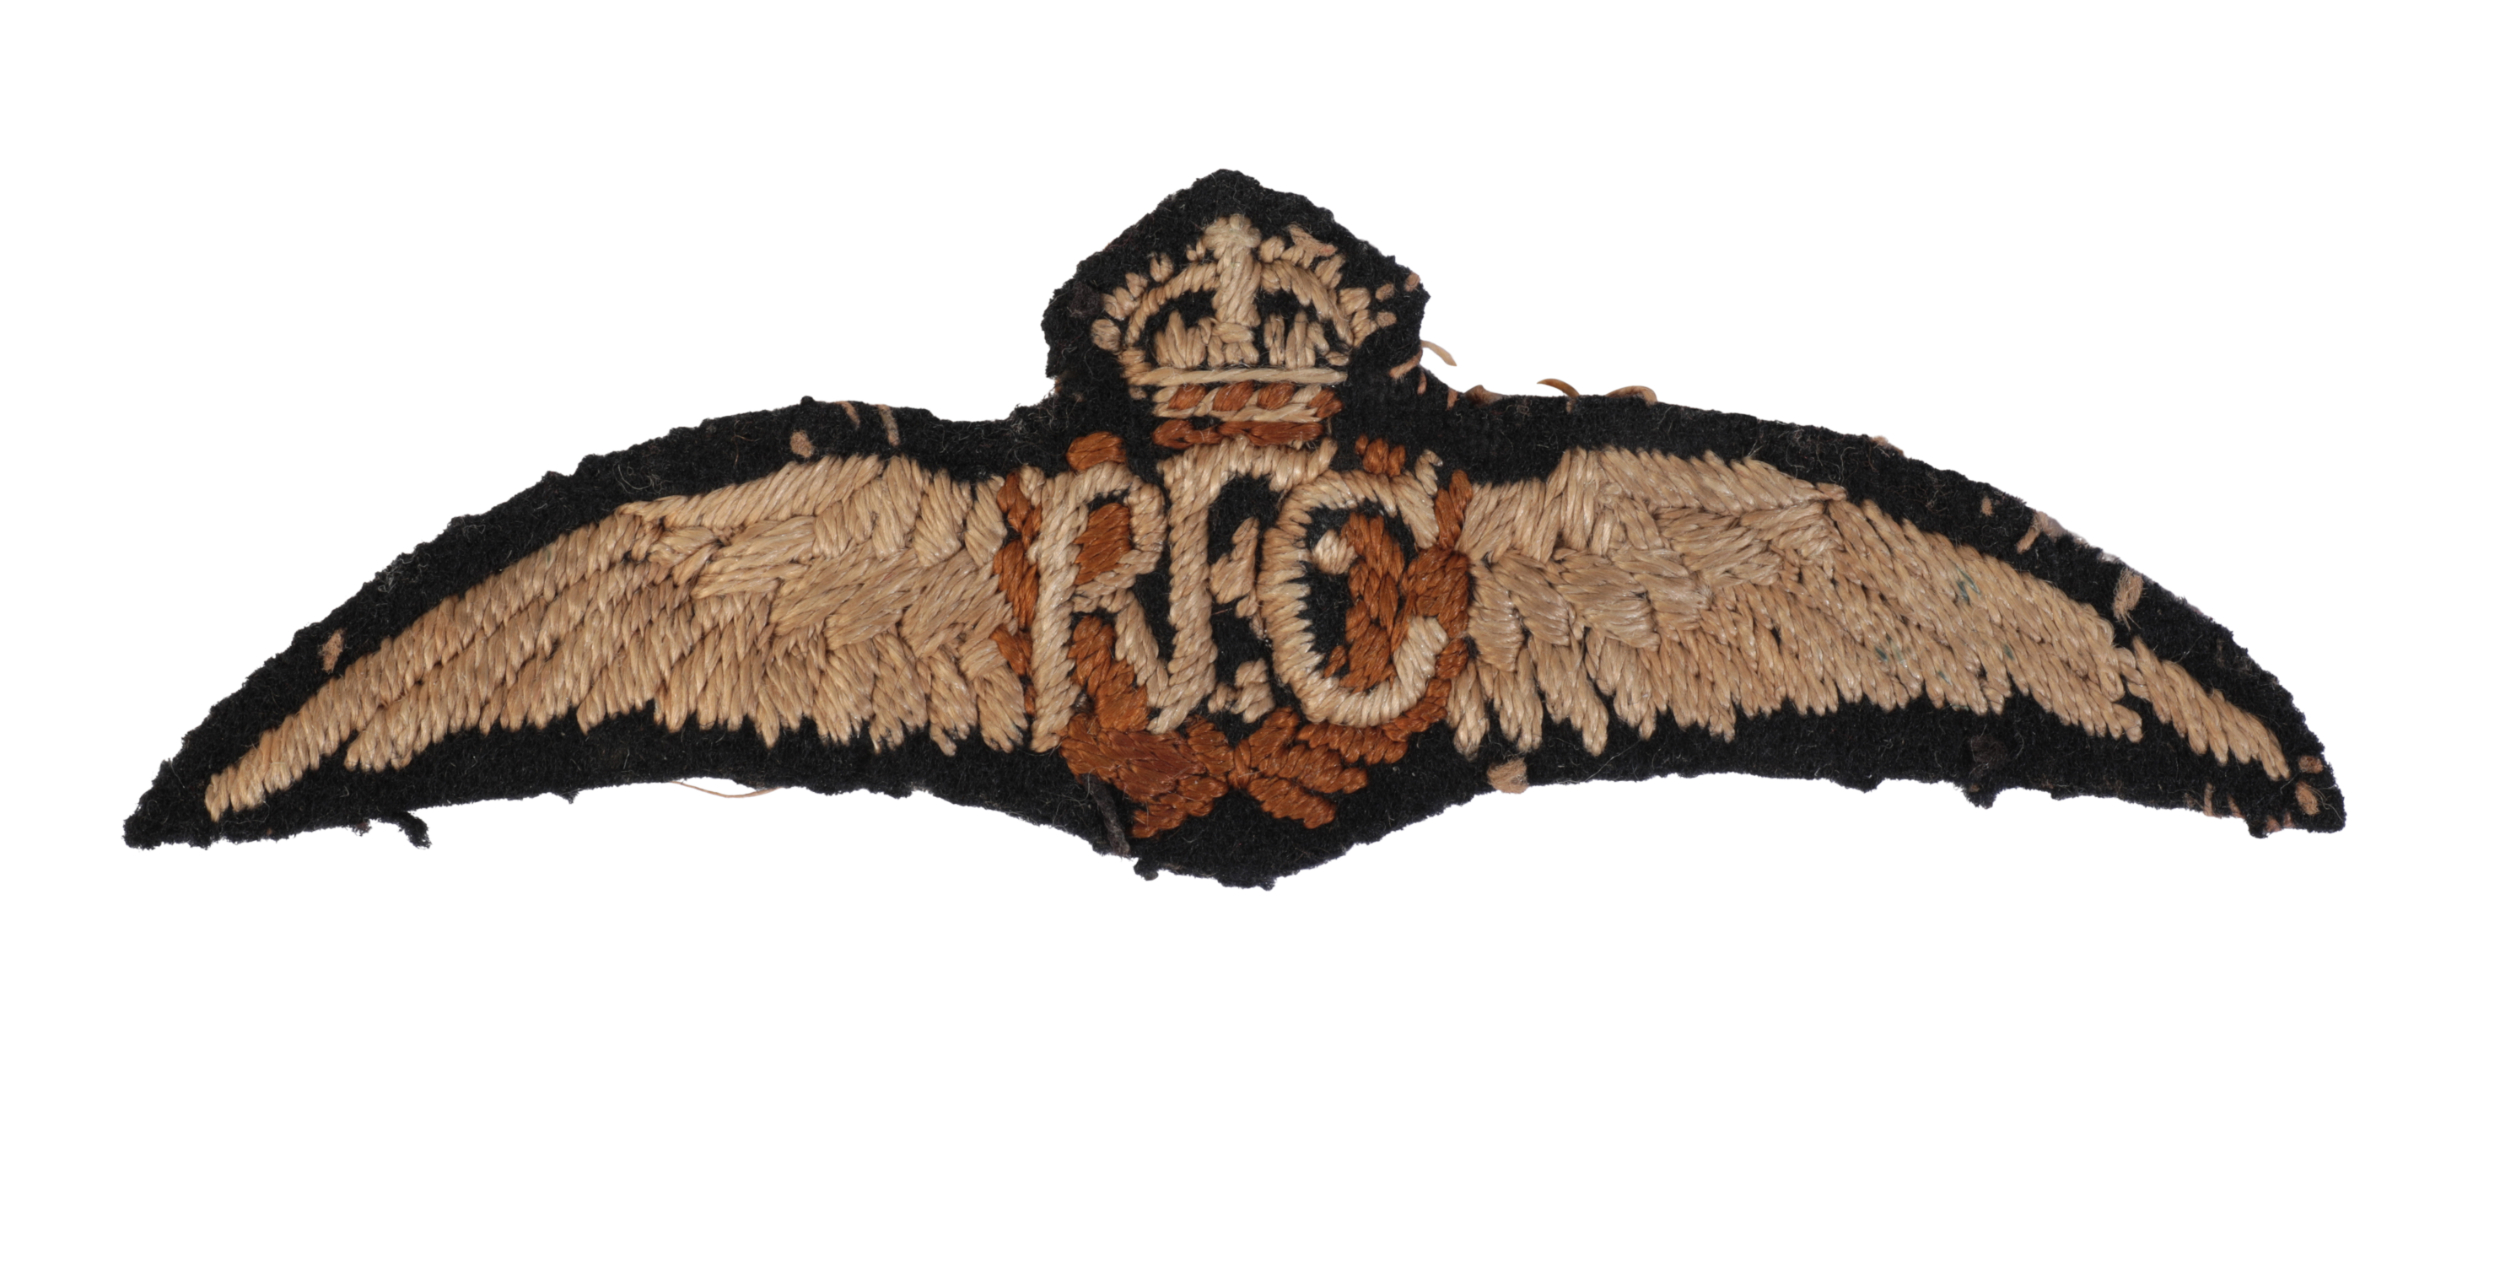 A SET OF ORIGINAL RFC CLOTH WINGS 